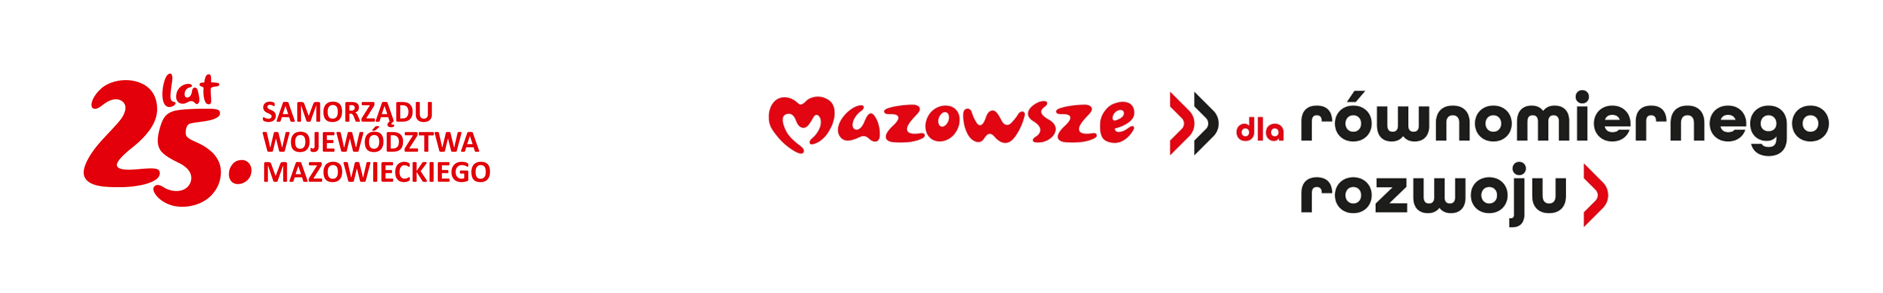 Na obrazku widnieje grafika jest logo z polskim tekstem oraz symbolem serca, które jest dostępne dla połączenia z władzami i władzami regionalnymi na Mazowszu. Logo można zastosować do świadomości miłości czy dumy ze swojego regionu.